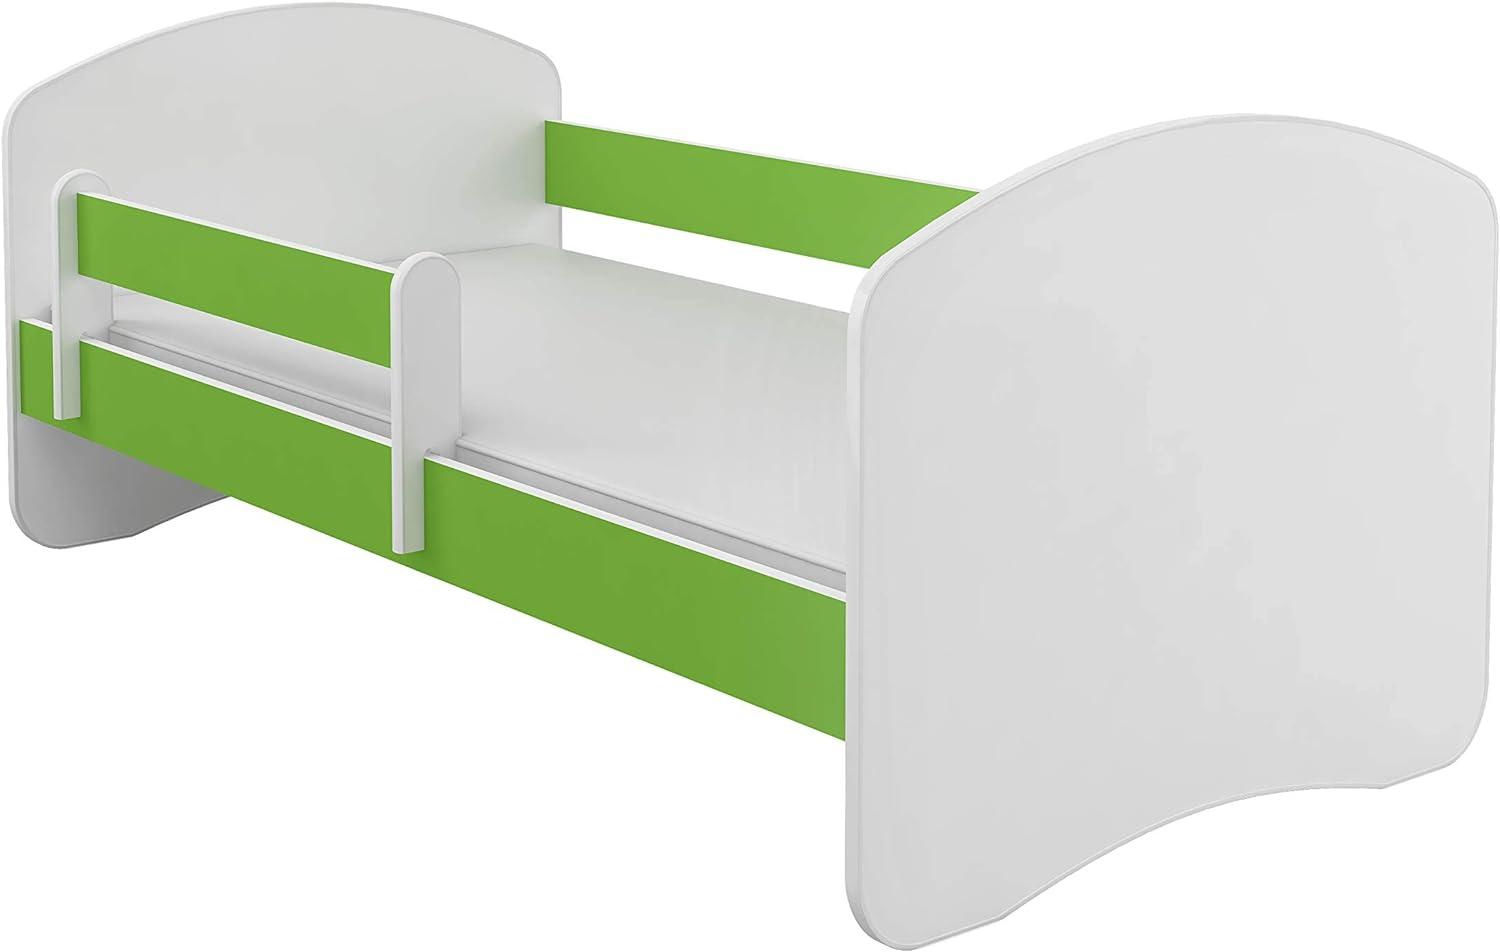 Kinderbett Jugendbett mit einer Schublade und Matratze Weiß ACMA II (180x80 cm, Grün) Bild 1